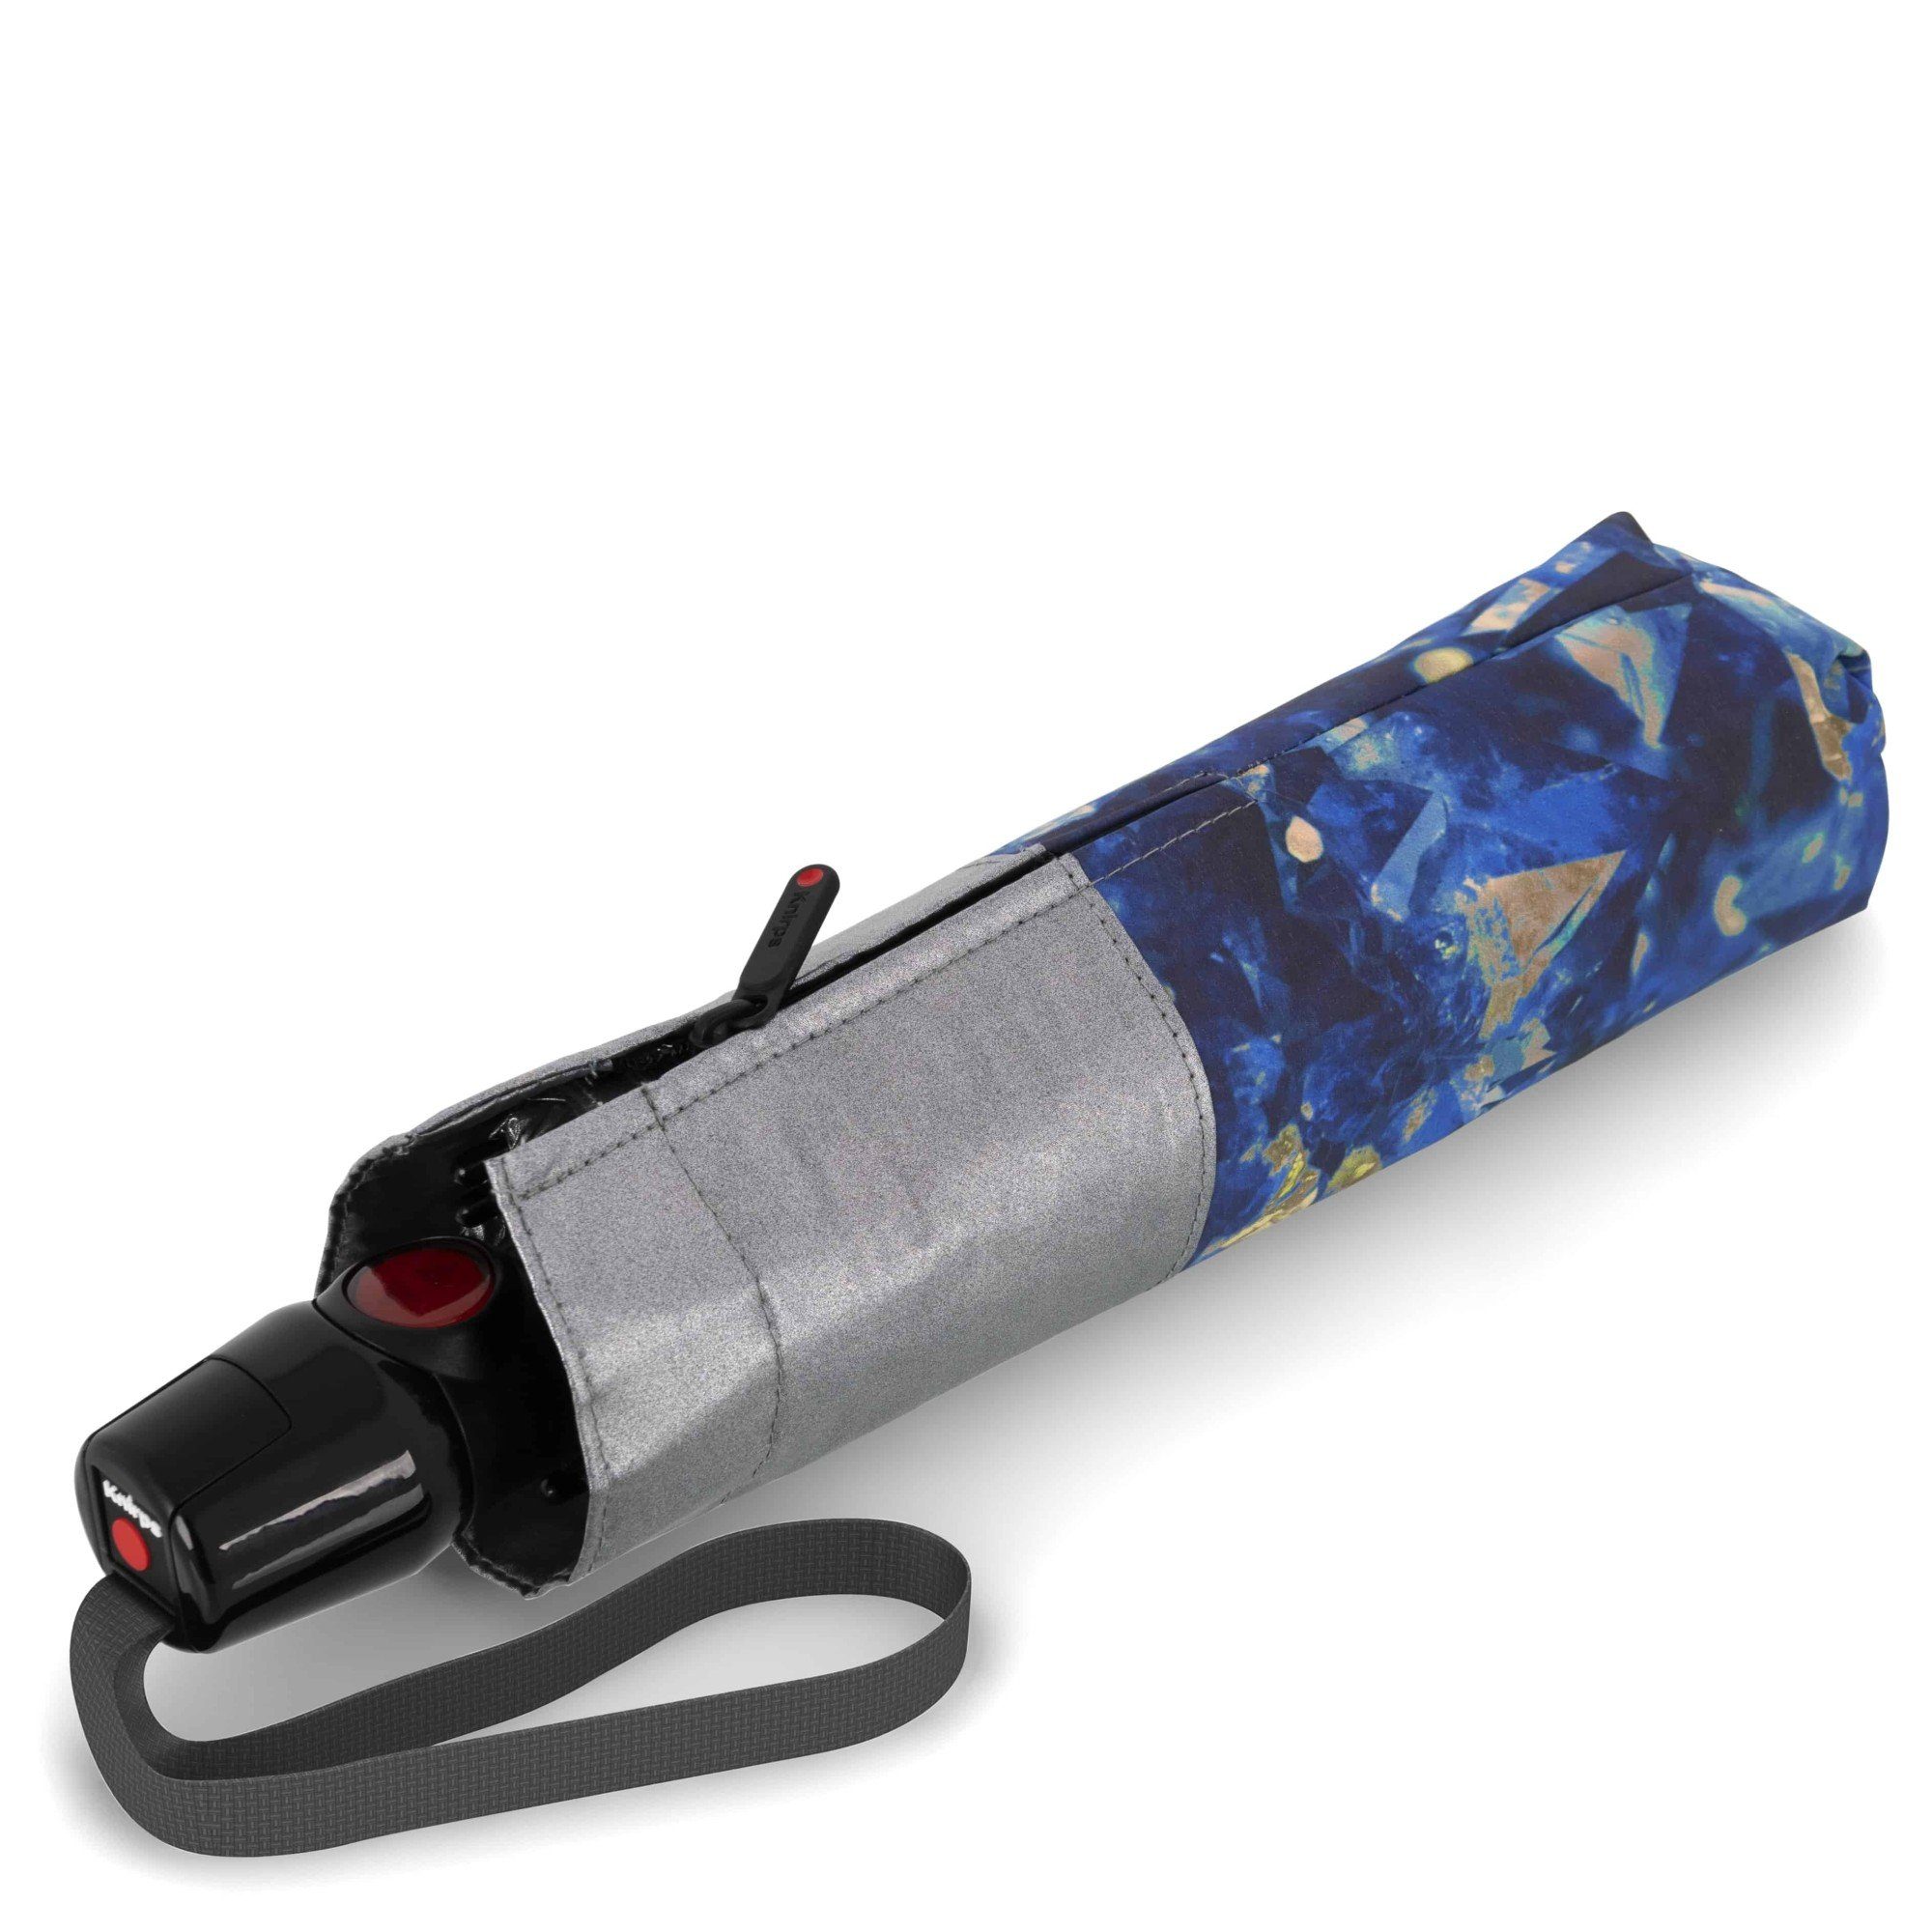 Taschenregenschirm - Duomatic feel Knirps® M T.200 Taschenschirm Regenschirm lapis